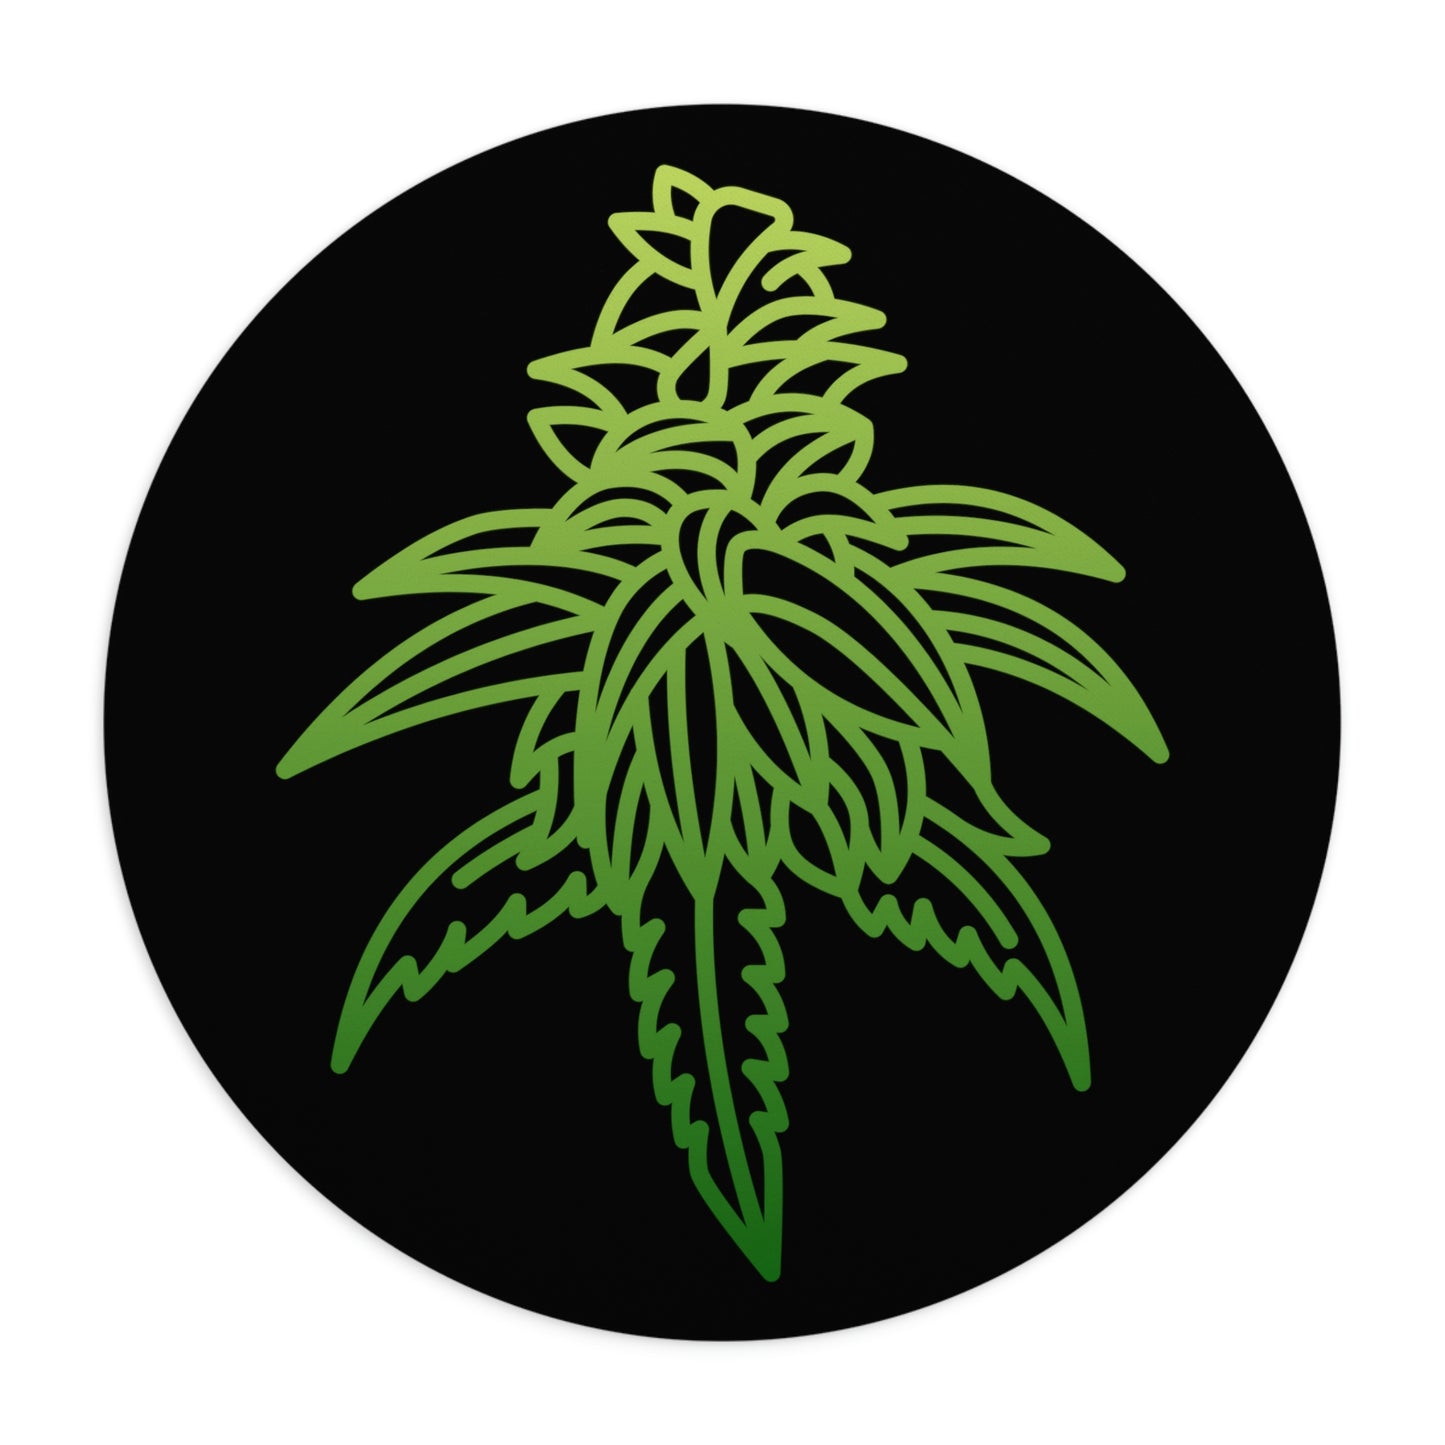 a green Sour Diesel cannabis leaf on a black circle.